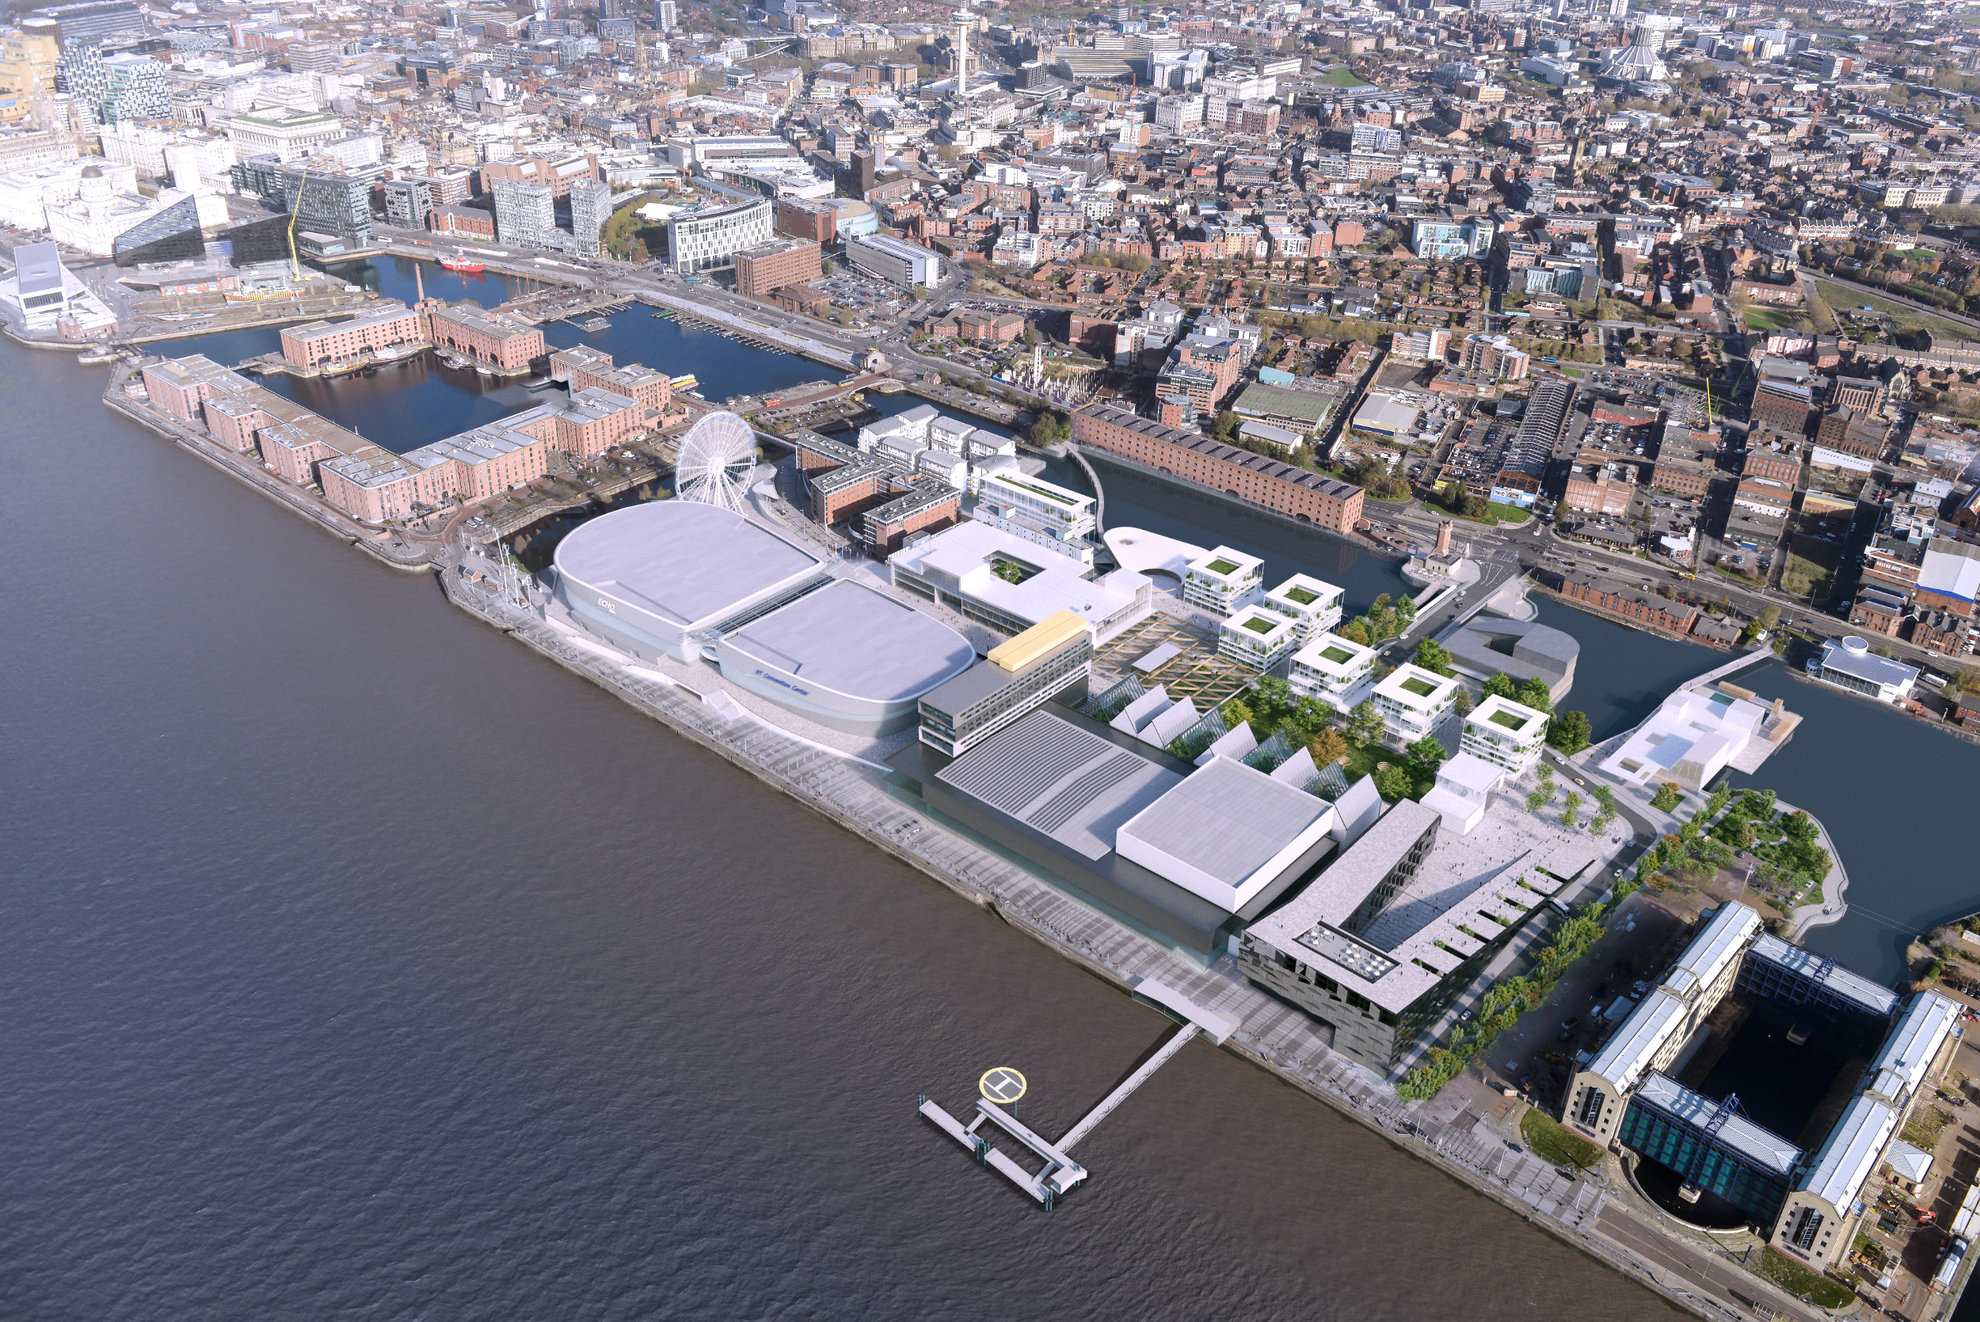 L'atelier architectes- Les docks de Liverpool